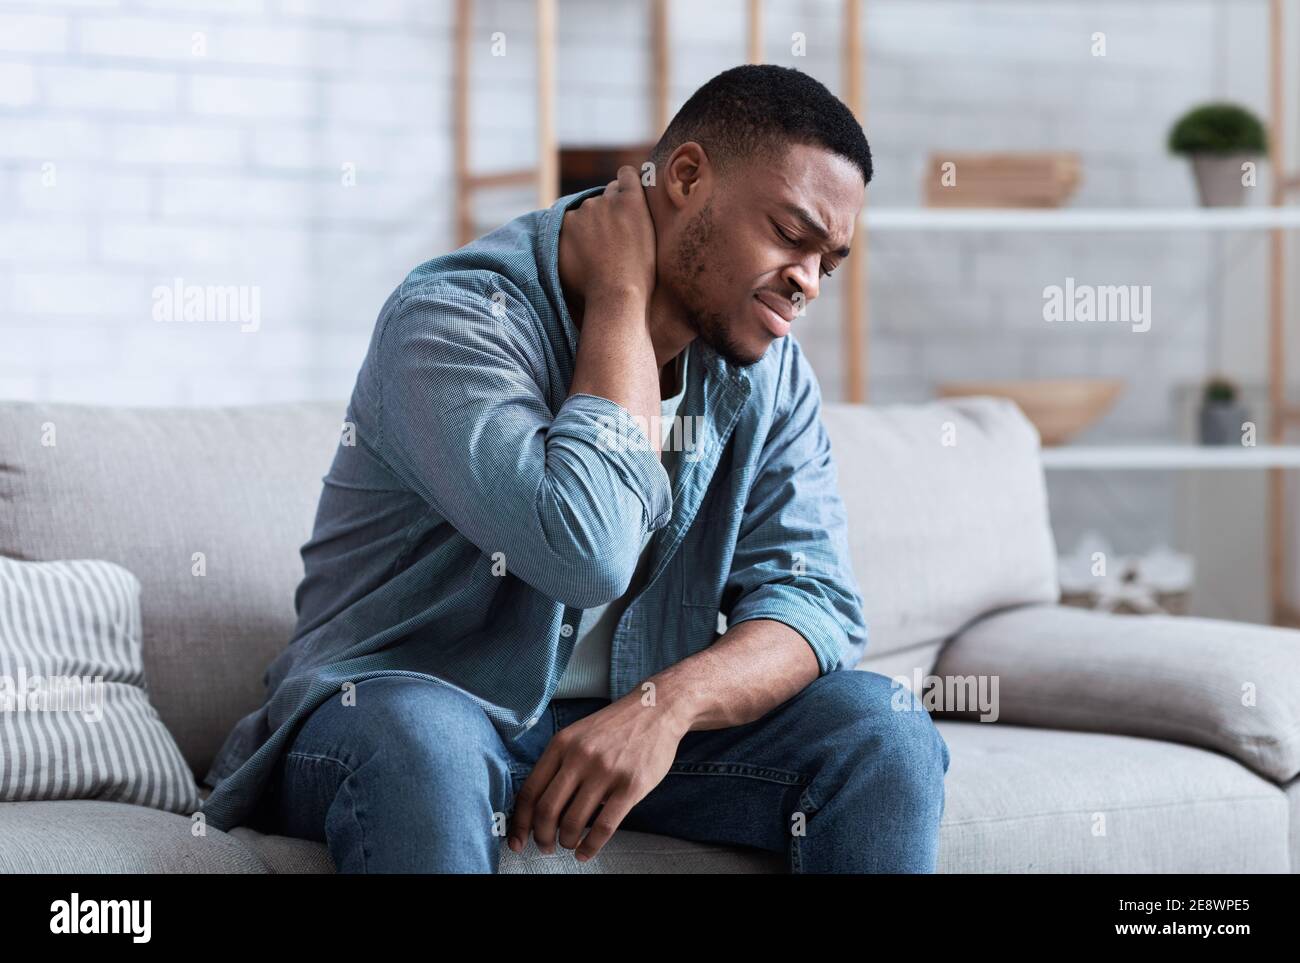 Homme noir souffrant de douleurs au cou assis sur la table à l'intérieur Banque D'Images